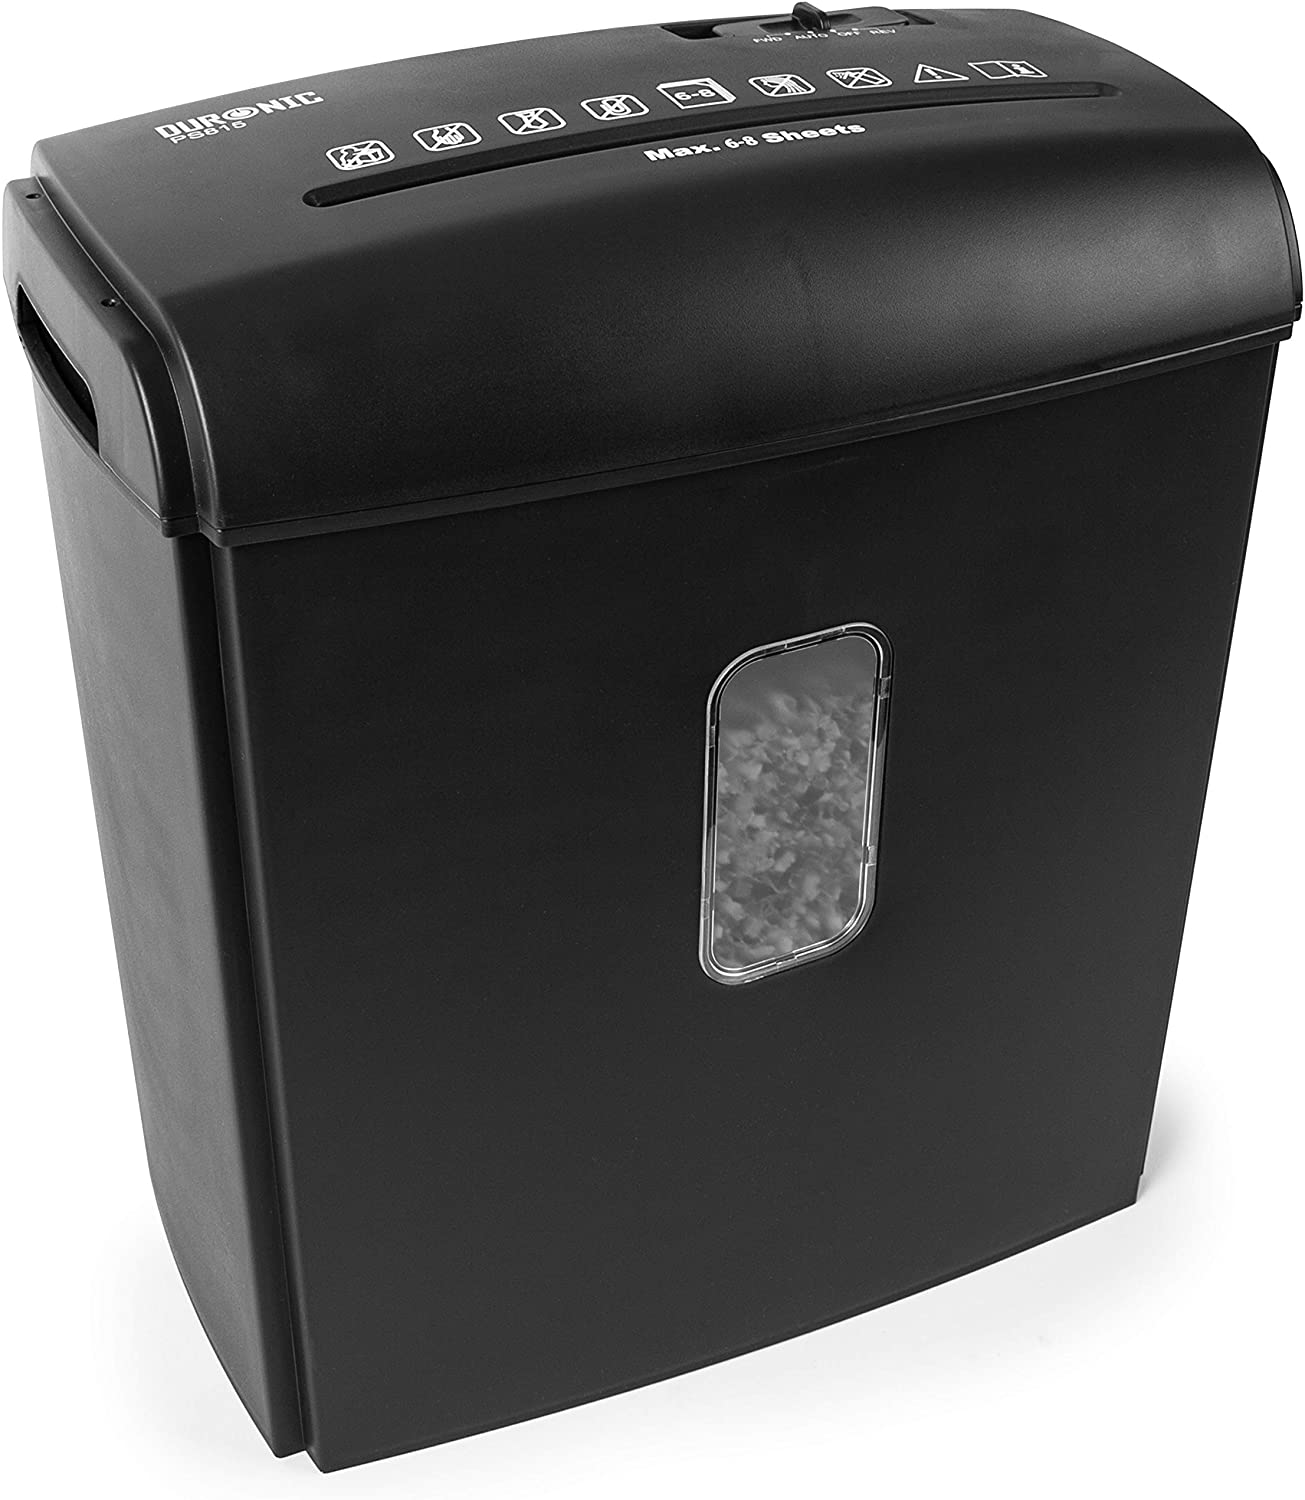 DURONIC PS815 Schredder 8X Elektrisch Kreuzschnitt | Behälter | Reißwolf Blatt Schwarz Aktenvernichter, 250W | 15 A4 L